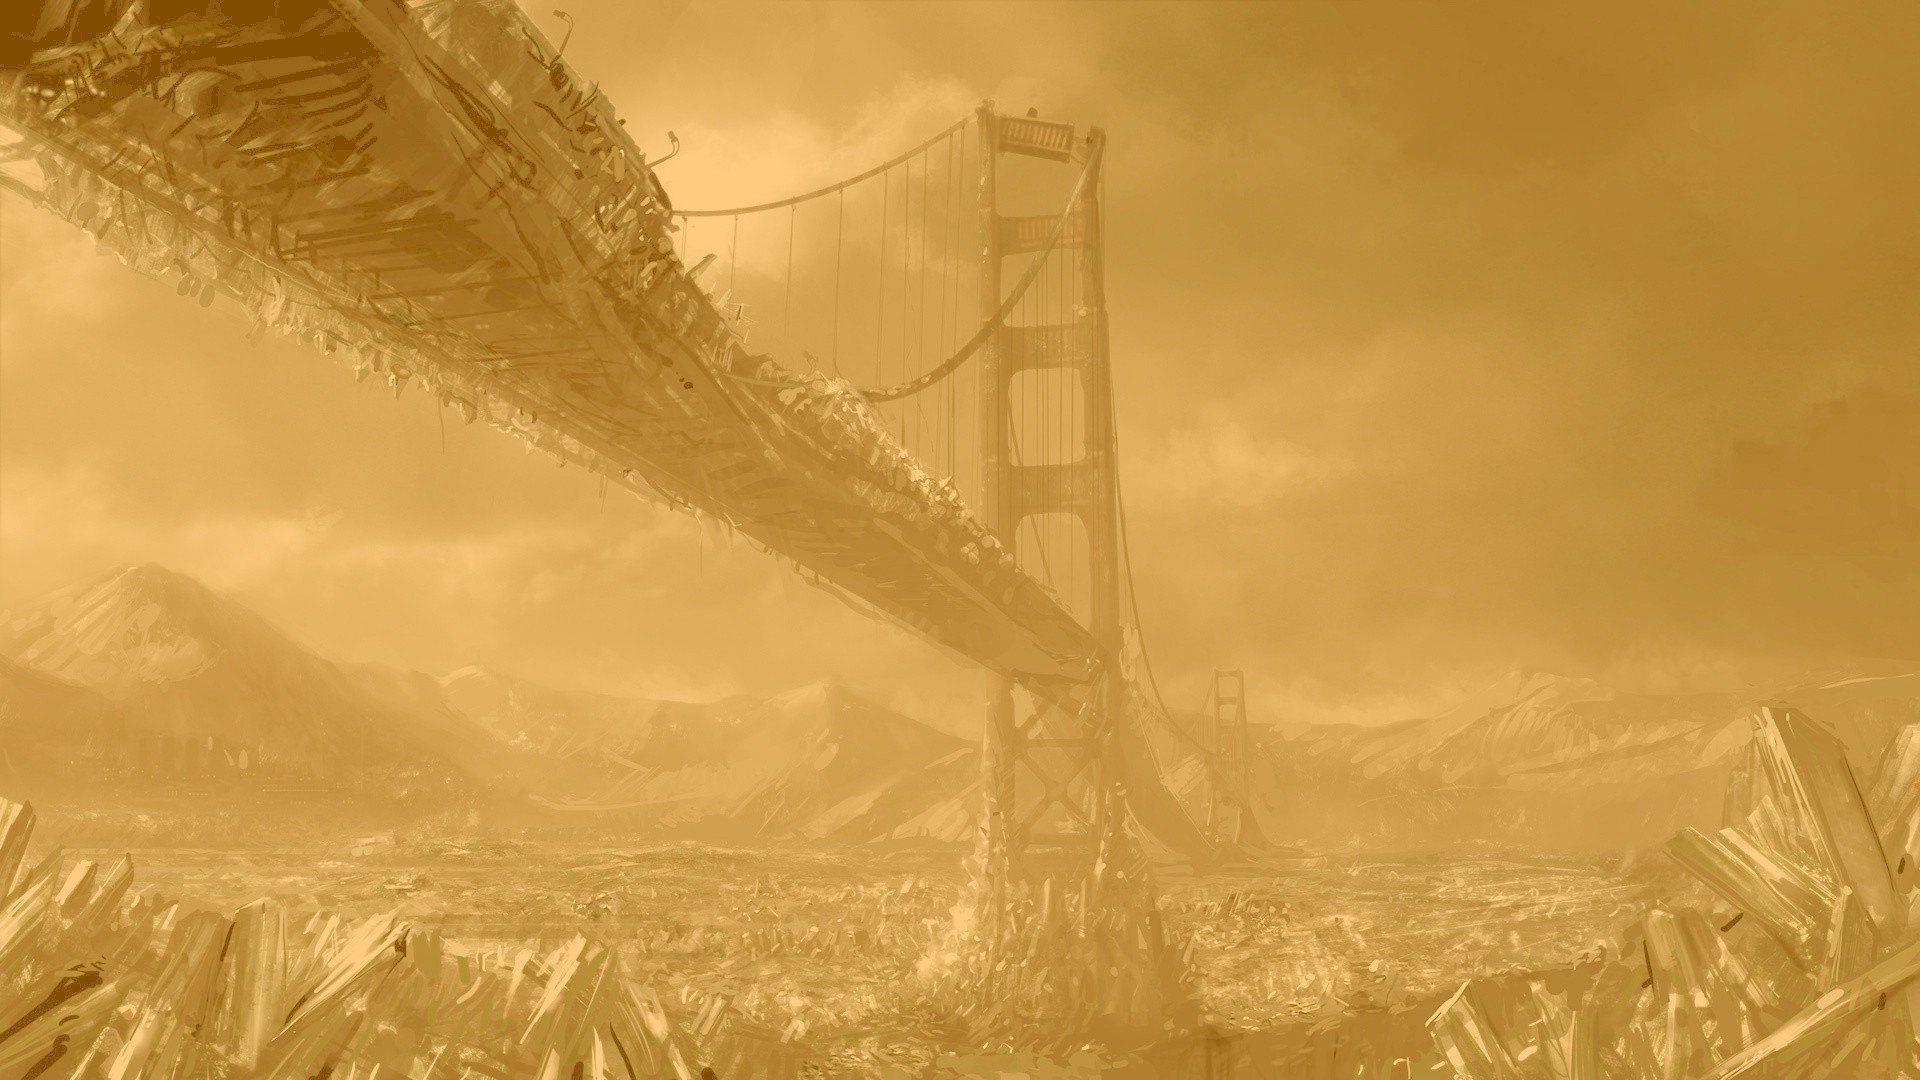 Мост золотые ворота постапокалипсис